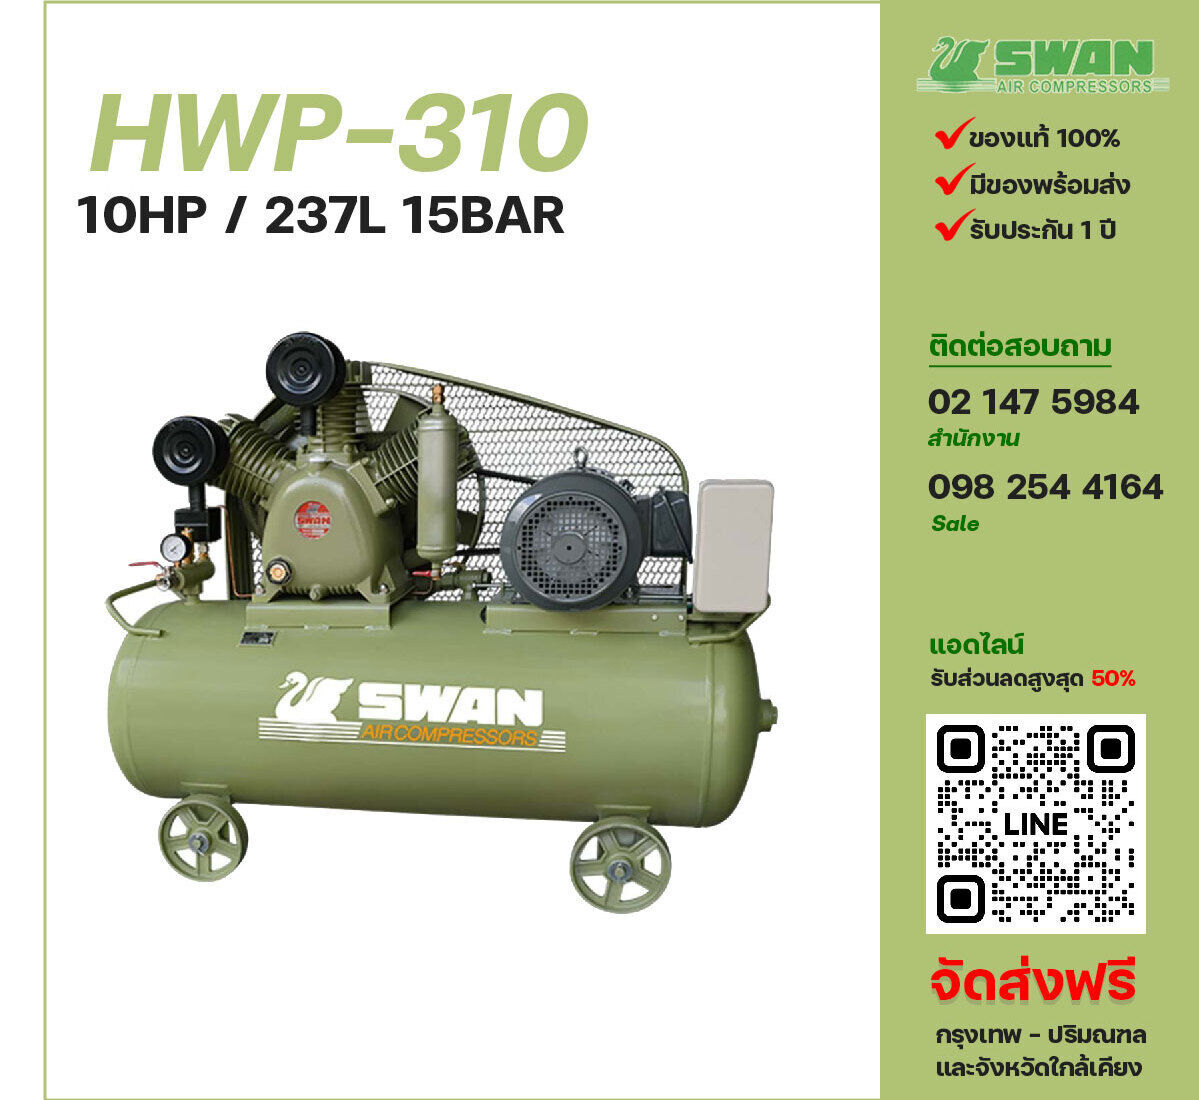 ปั๊มลมสวอนแรงดันสูง SWAN Two-Stage HWP-310 380V ปั๊มลมลูกสูบ ขนาด 3 สูบ 10 แรงม้า 237 ลิตร FUSHENG พร้อมมอเตอร์ ไฟ 380V ส่งฟรี กรุงเทพฯ-ปริมณฑล รับประกัน 1 ปี